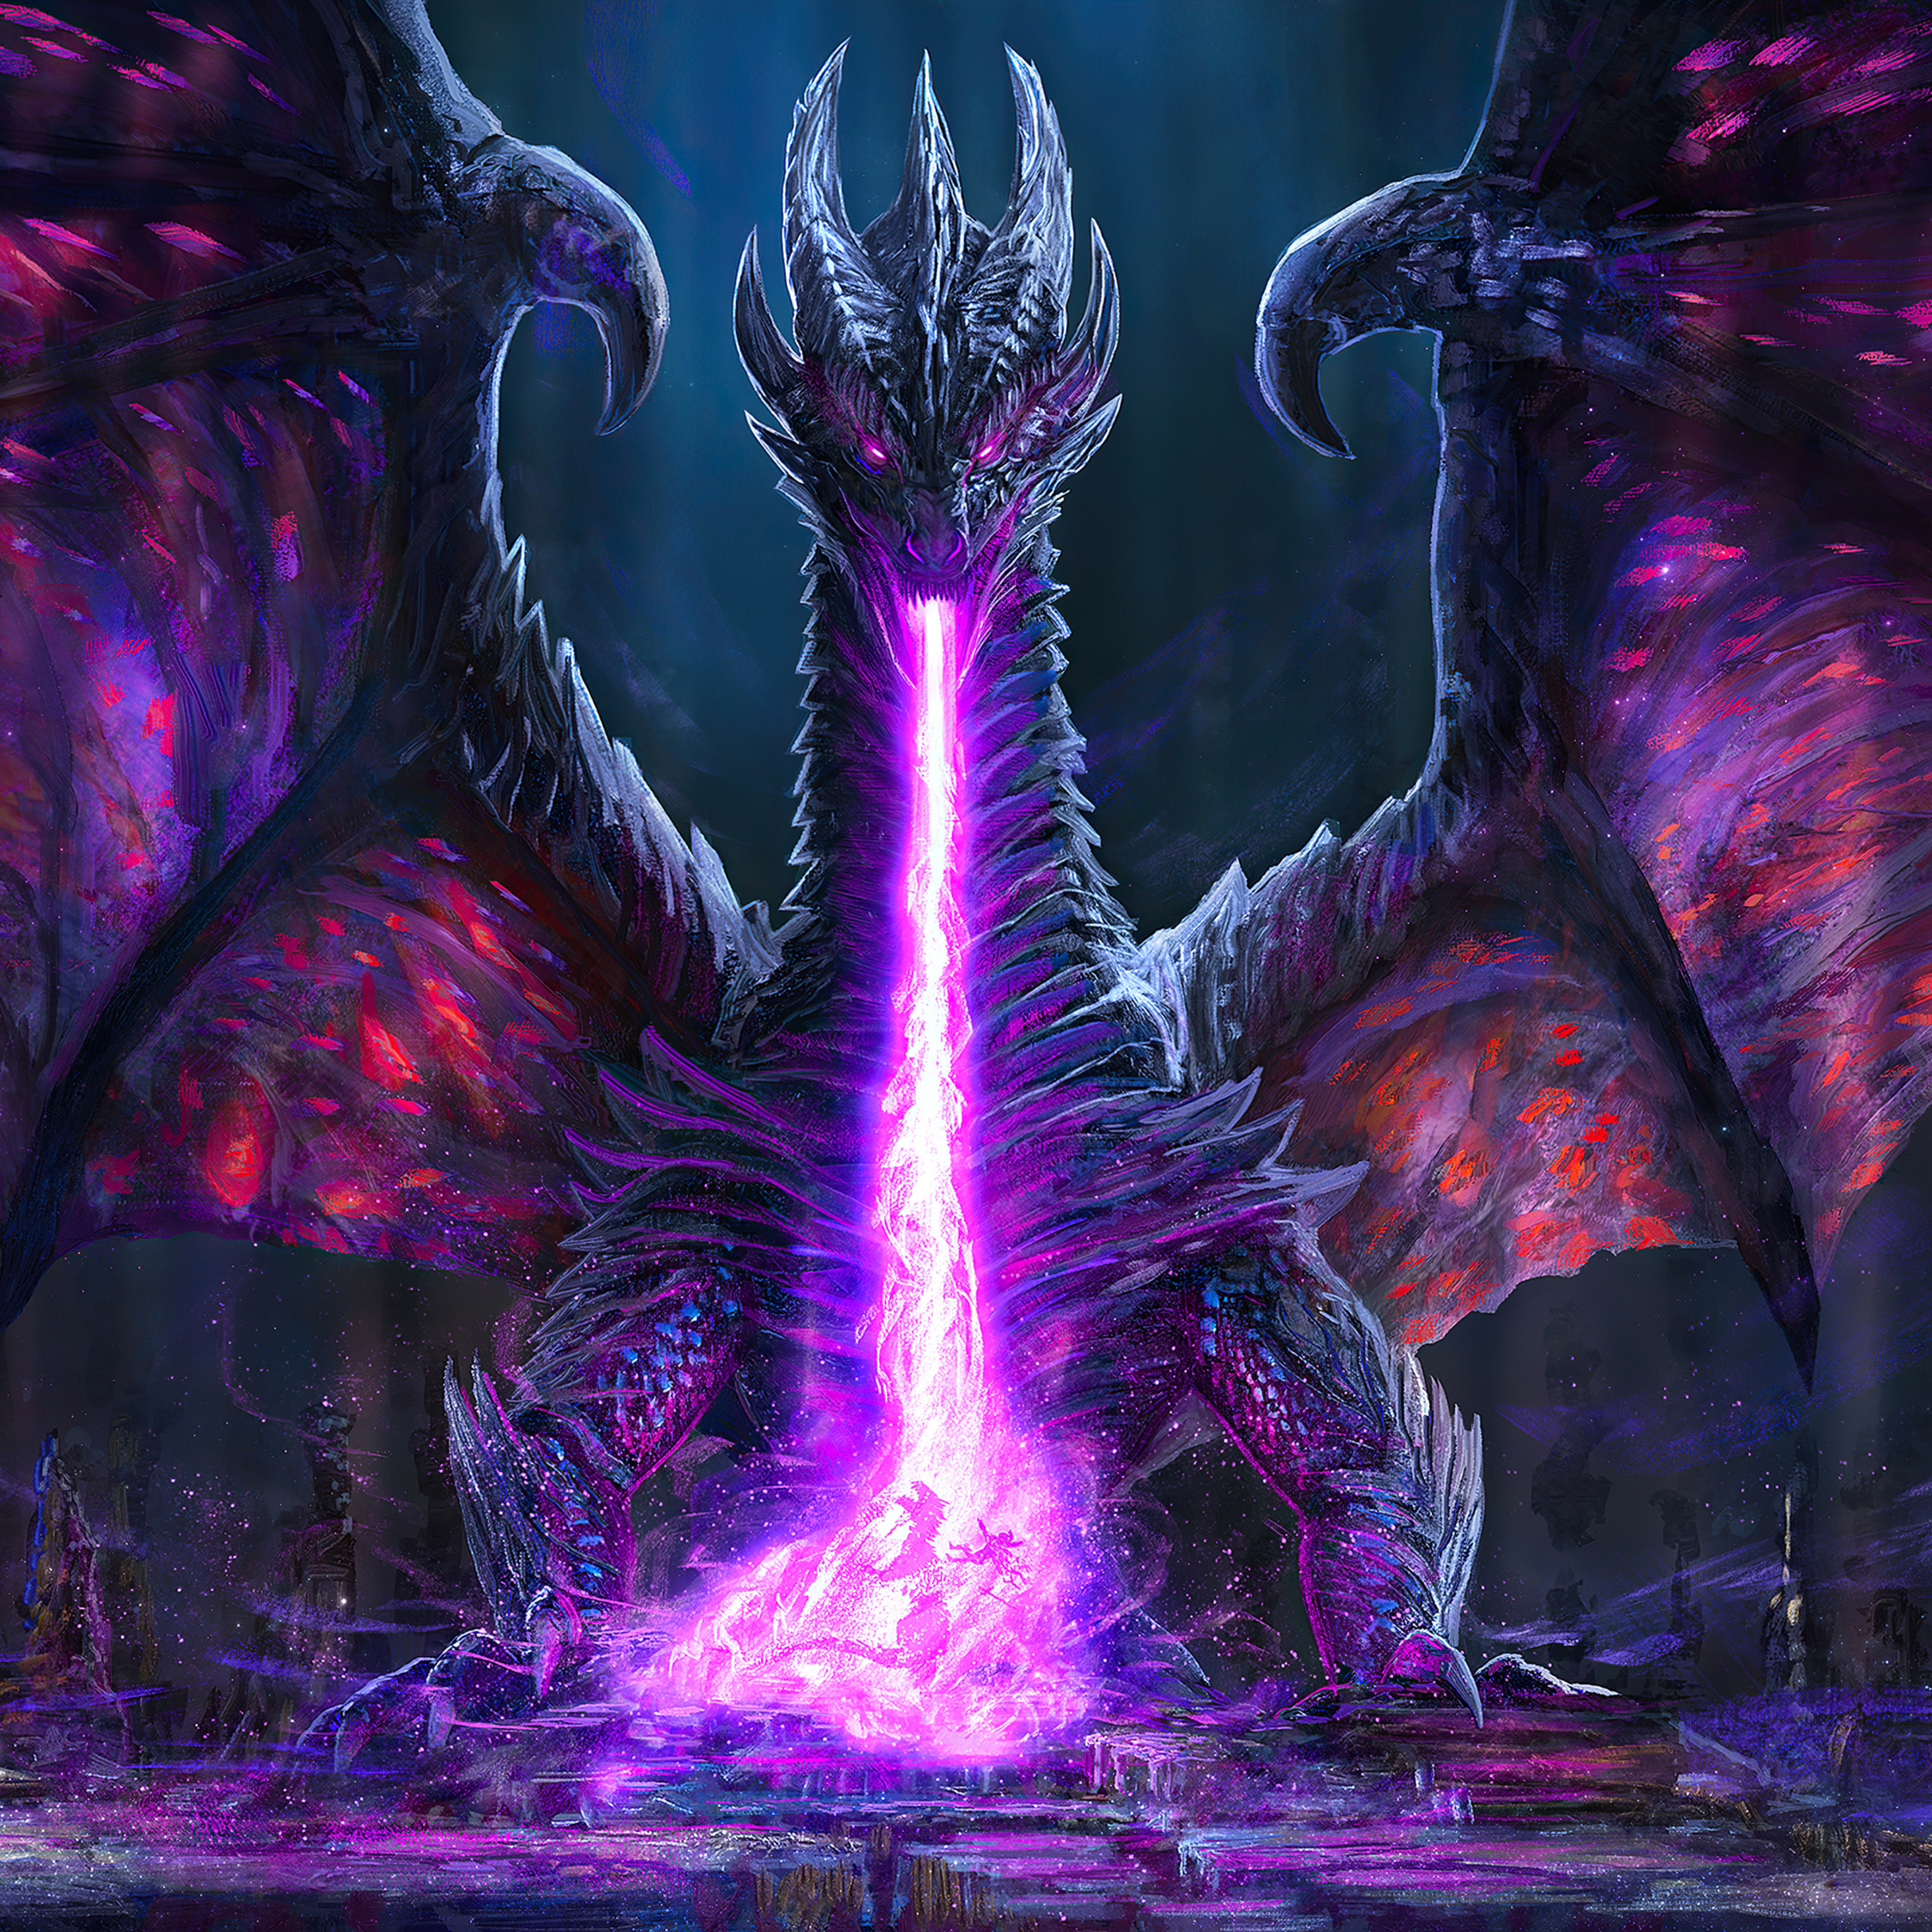 Tham gia vào trận chiến mãn nhãn với Black Dragon Breath Battle. Những hiệu ứng đặc biệt sẽ khiến trận chiến nổi bật hơn bao giờ hết, và những tình tiết kịch tính đến nghẹt thở sẽ khiến bạn không thể rời mắt khỏi hình ảnh.